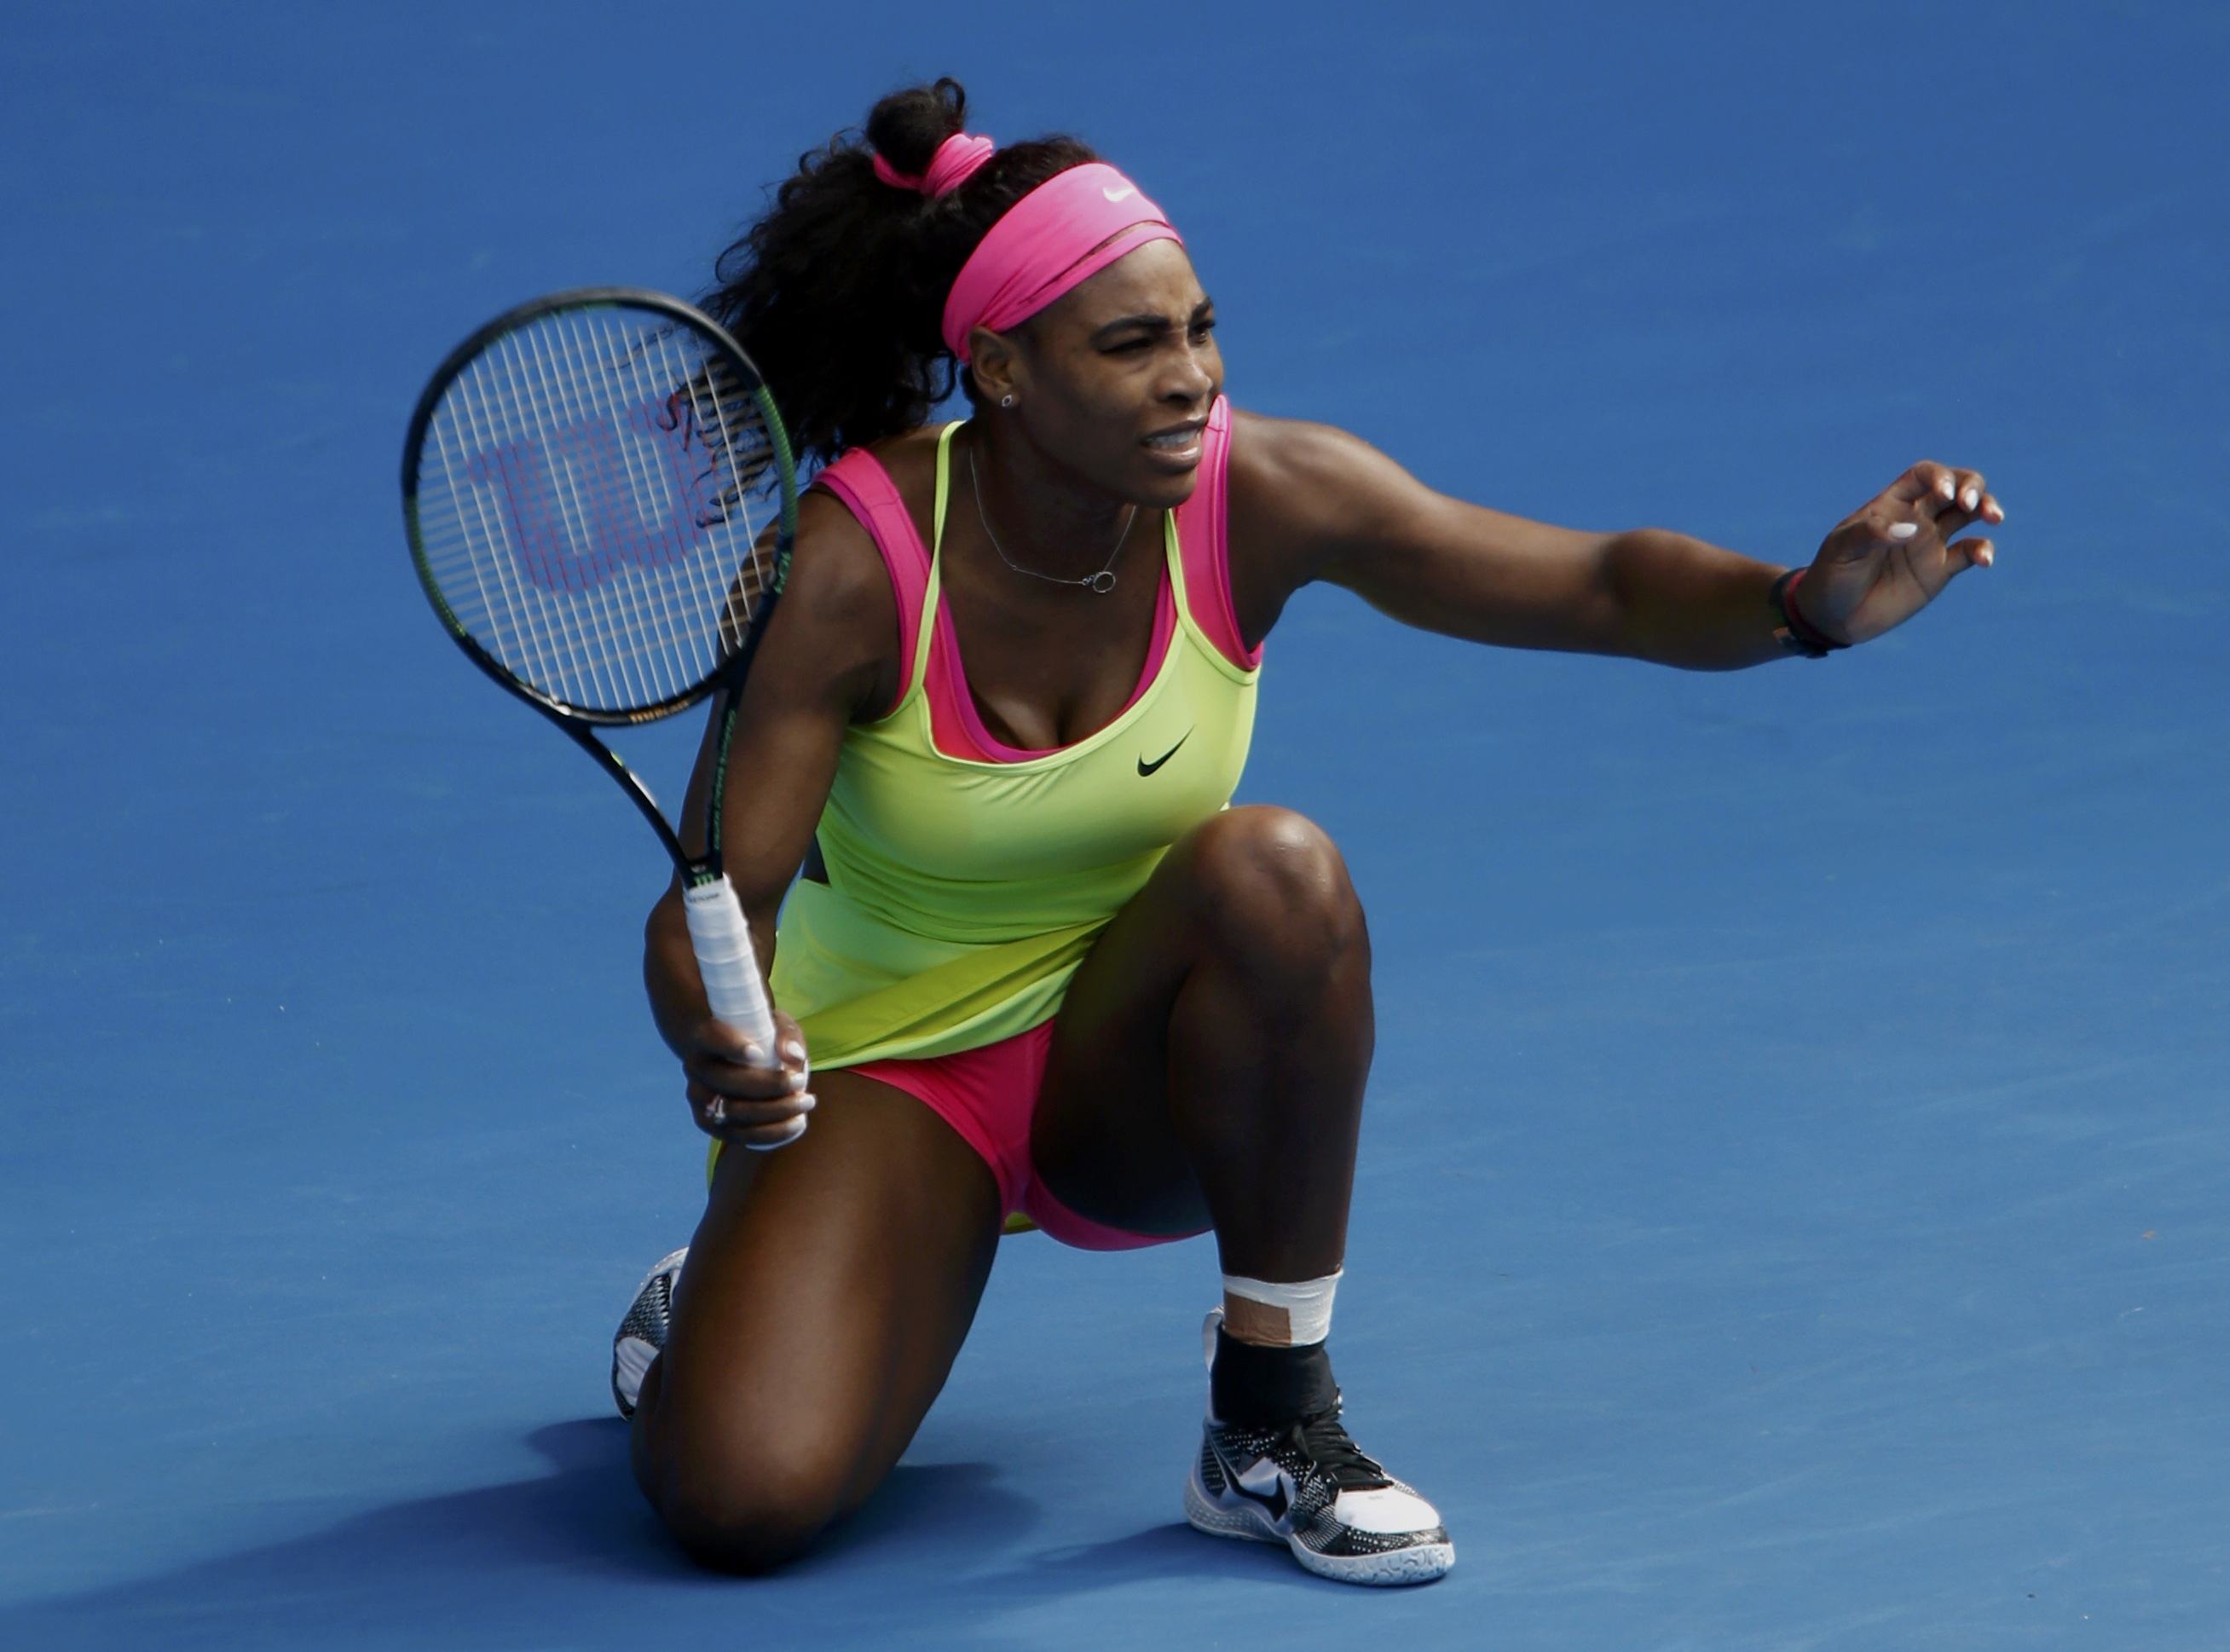 Serena Williams se compara con una “Superhéroe” tras perseguir y capturar a un ladrón